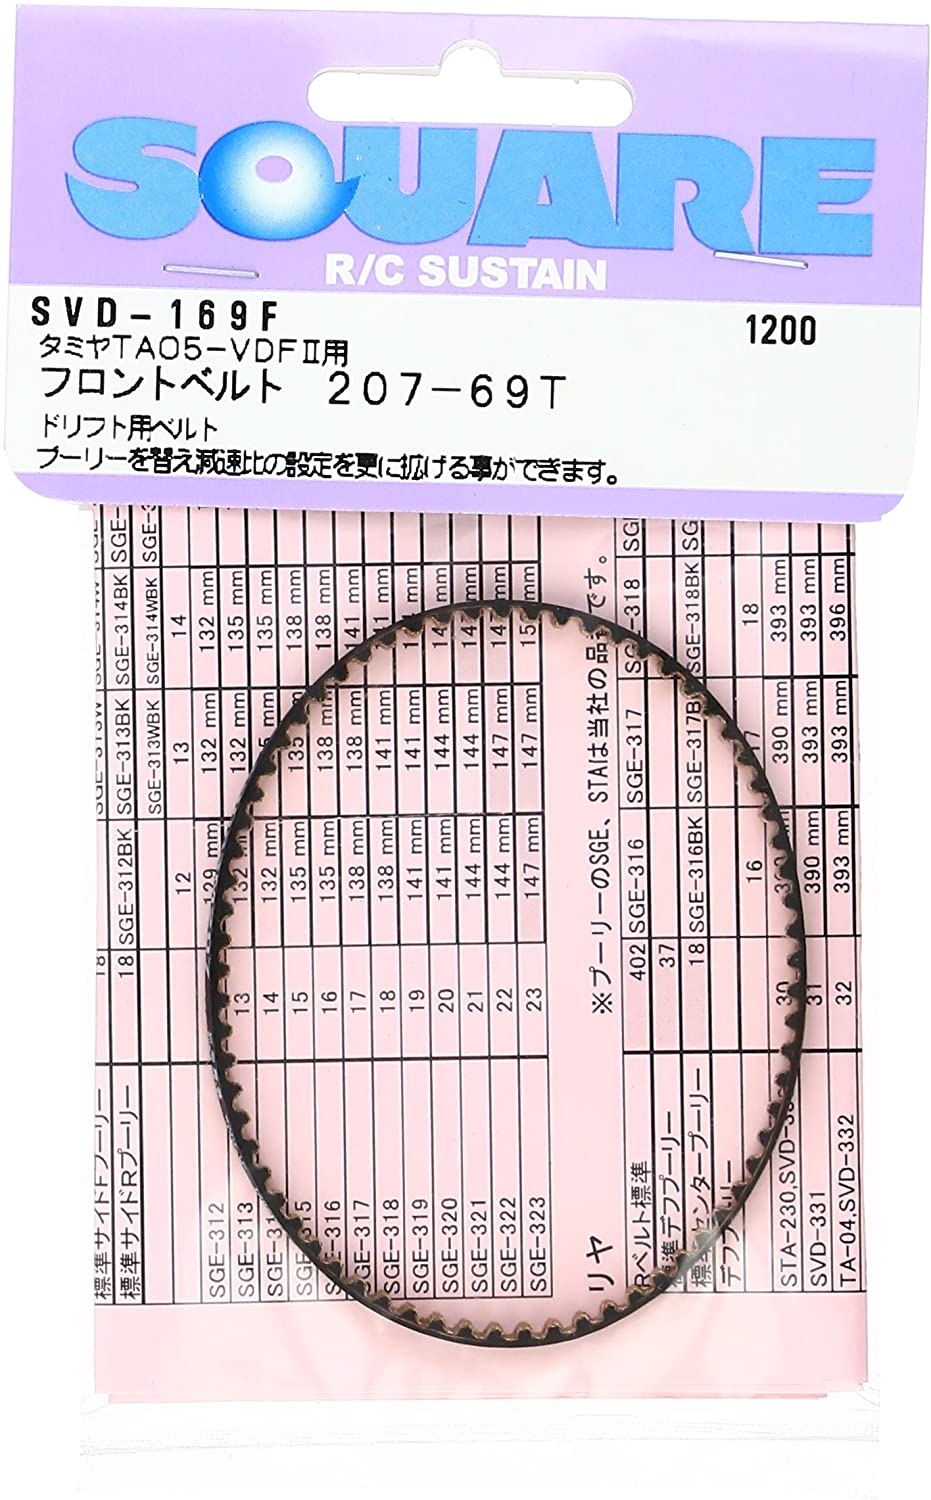 SVD-169F Front Drive Belt 207-69T TA05-VDFI